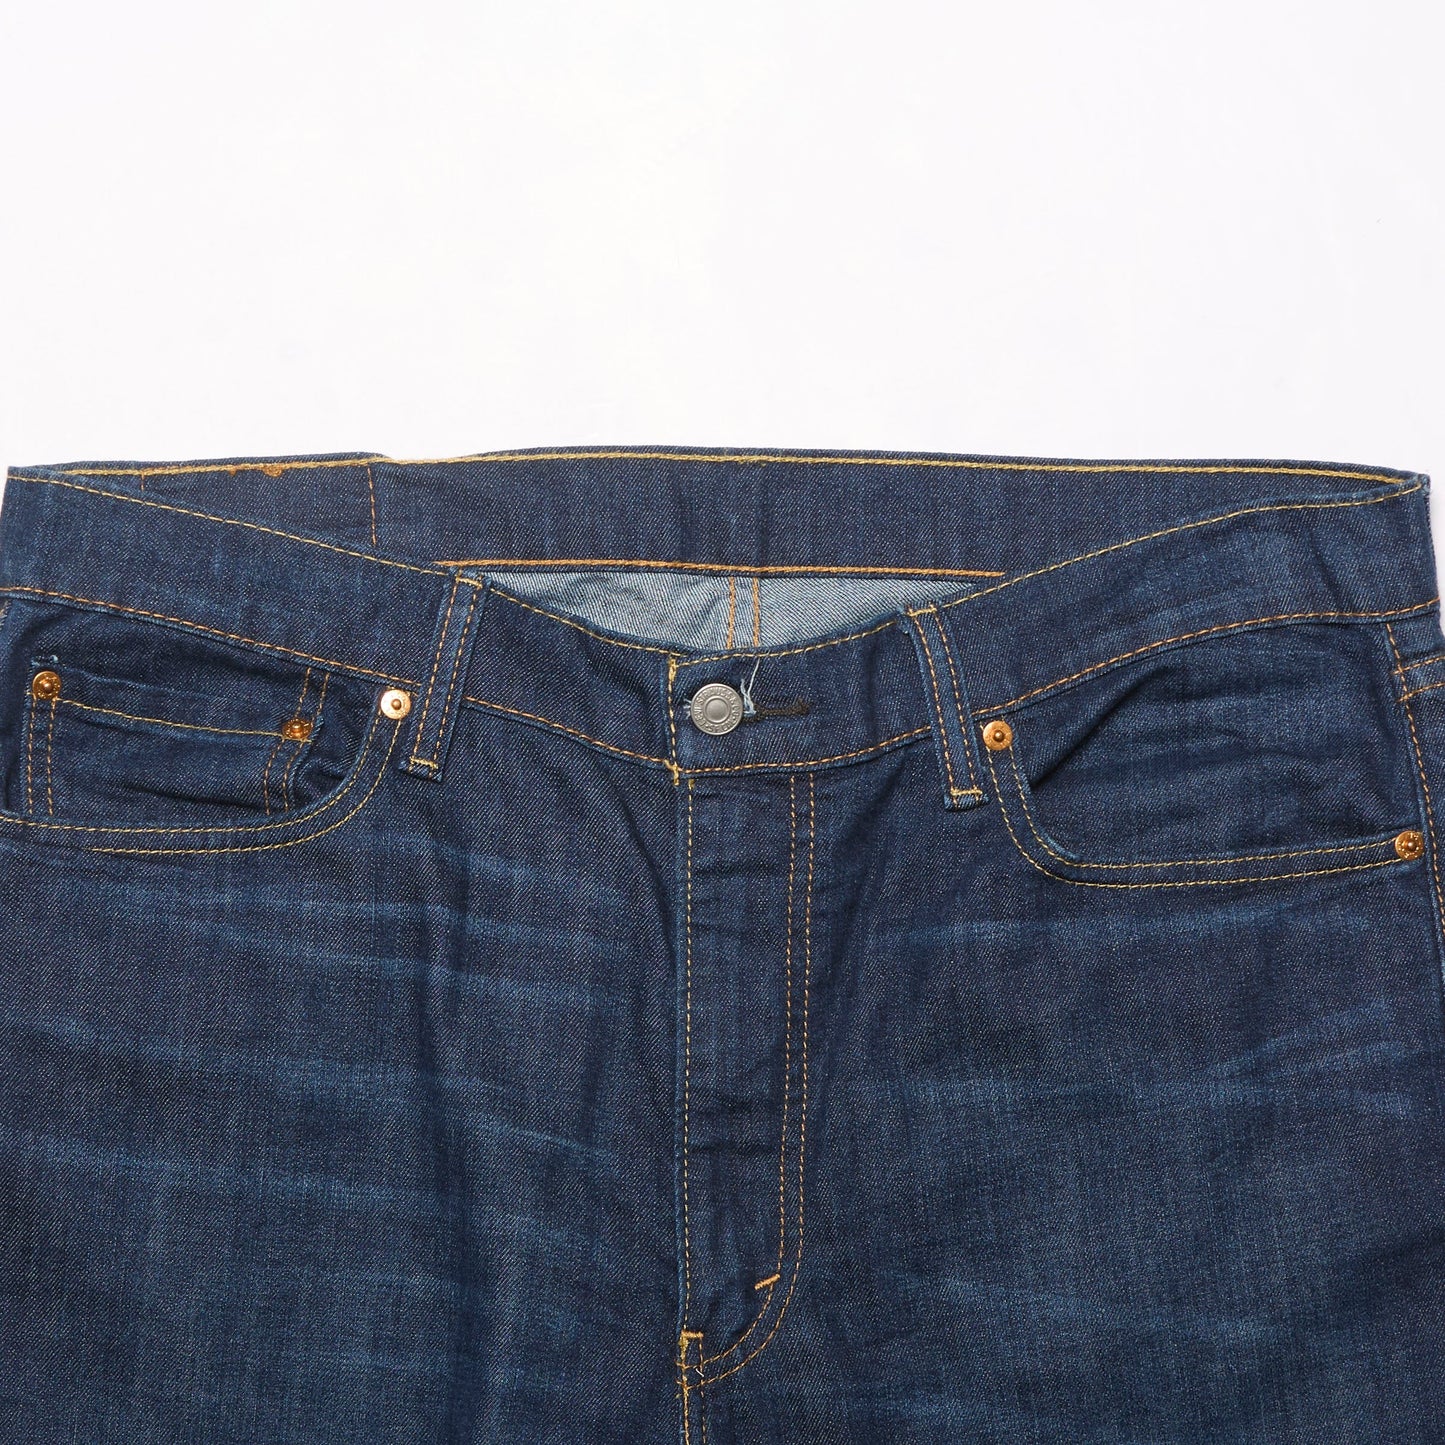 Levis 513 Jeans - W36" L28"